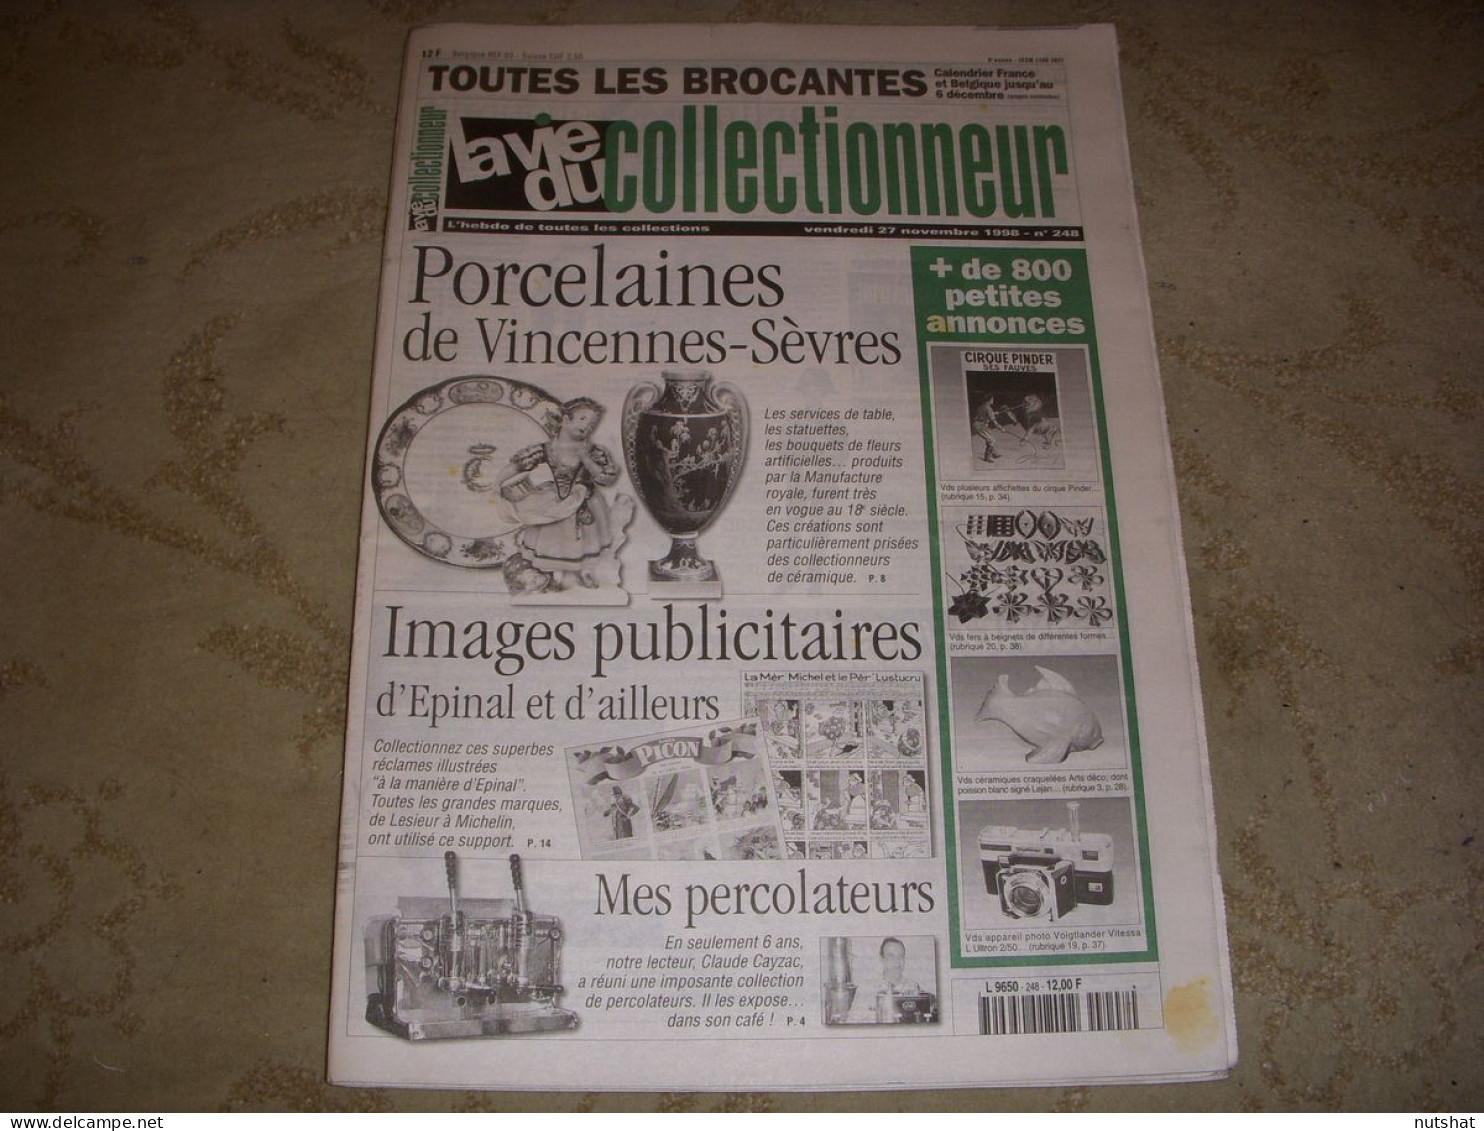 LVC VIE Du COLLECTIONNEUR 248 27.11.1998 PORCELAINE IMAGES EPINAL PERCOLATEUR  - Brocantes & Collections